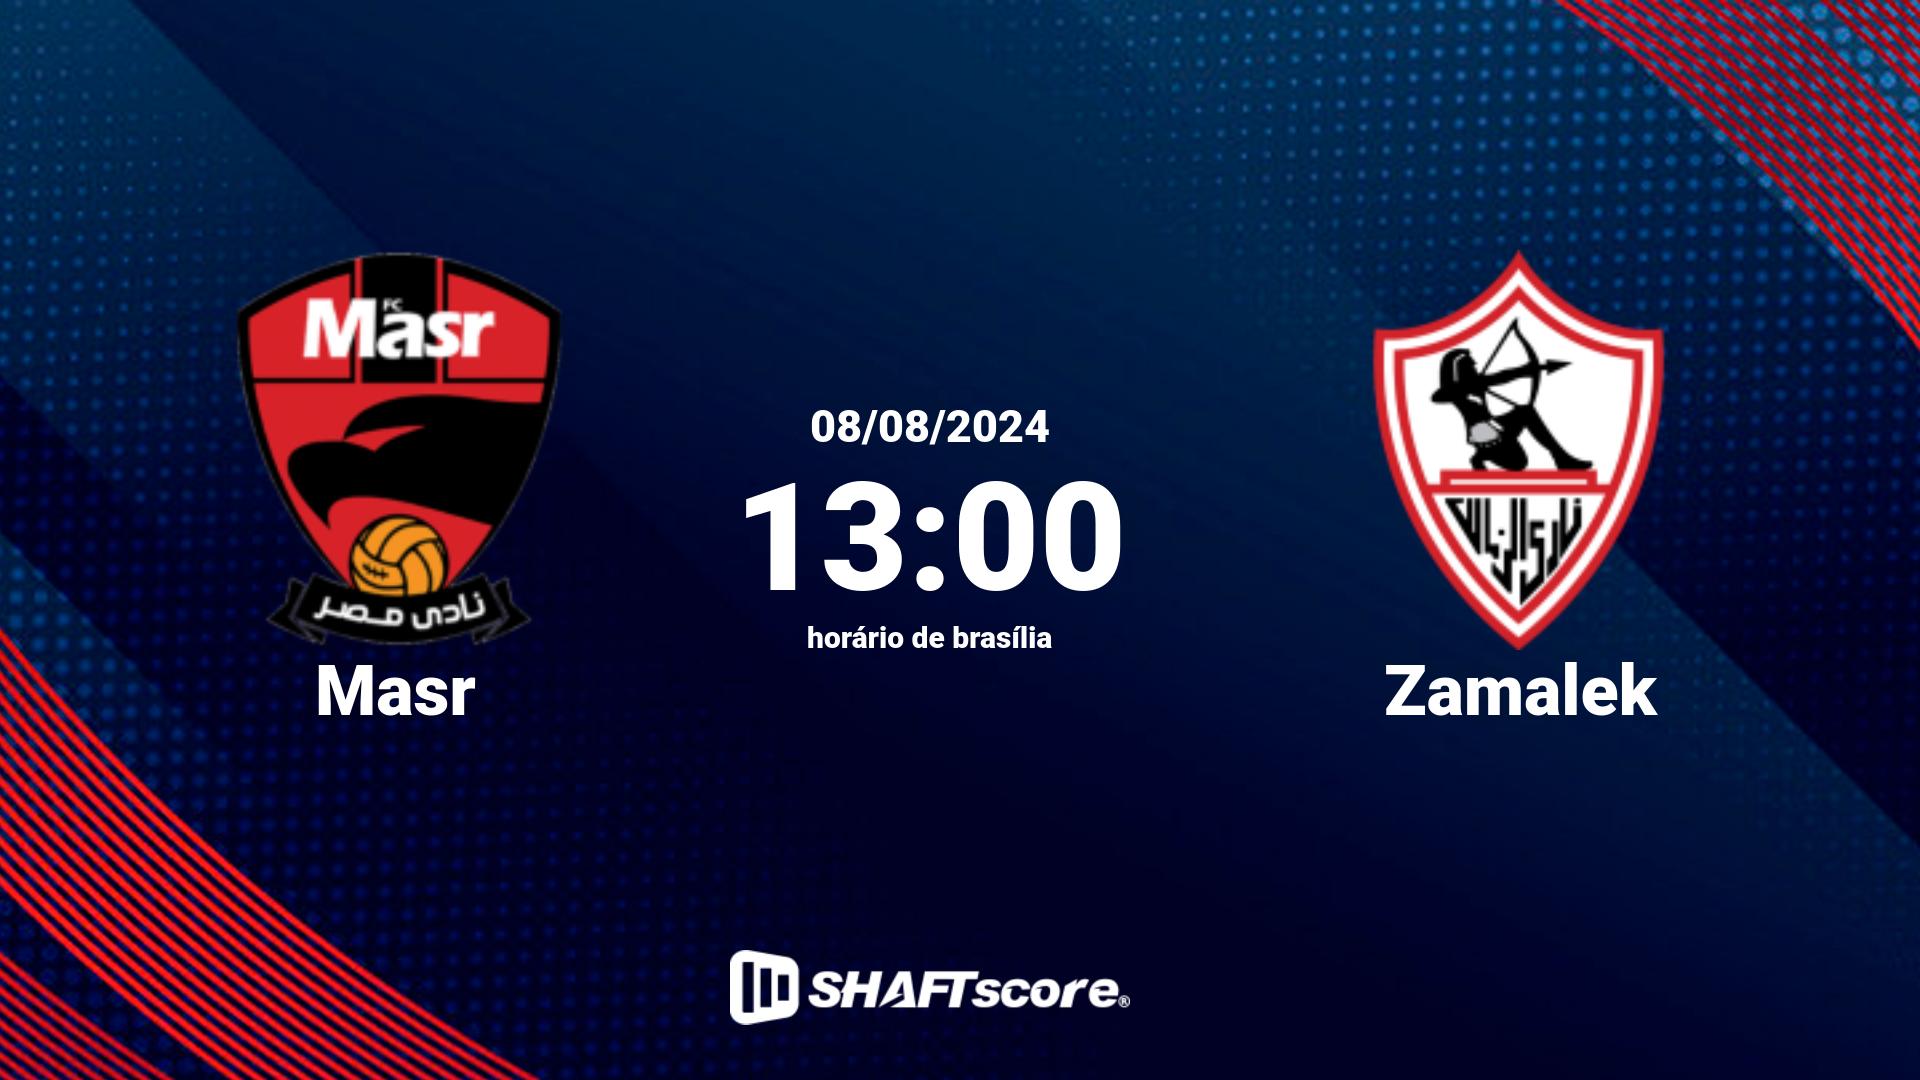 Estatísticas do jogo Masr vs Zamalek 08.08 13:00